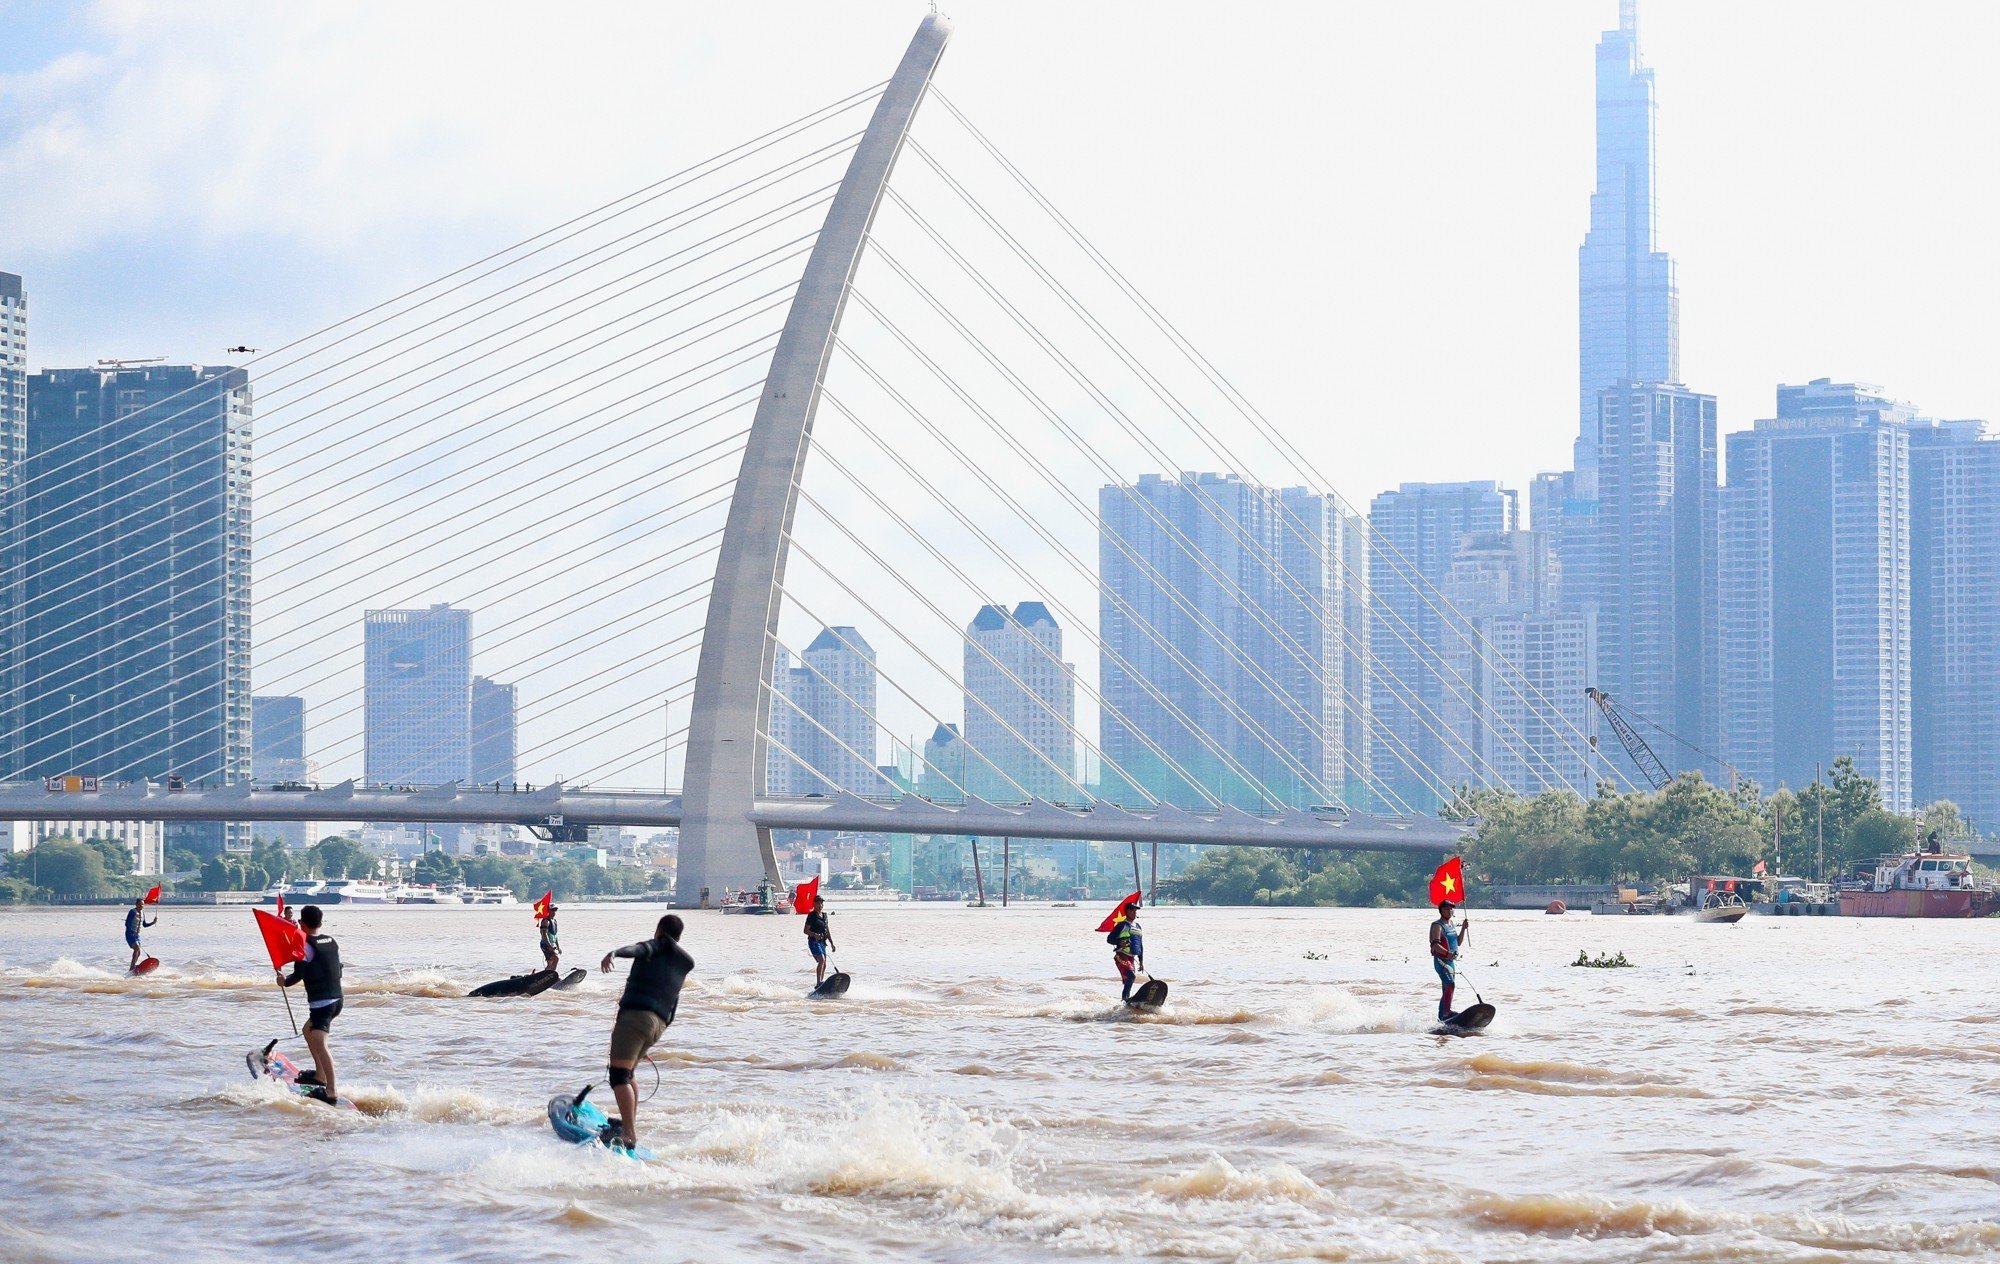 Sông Sài Gòn dậy sóng với giải đua thuyền truyền thống và trình diễn thể thao sông nước - Ảnh 9.